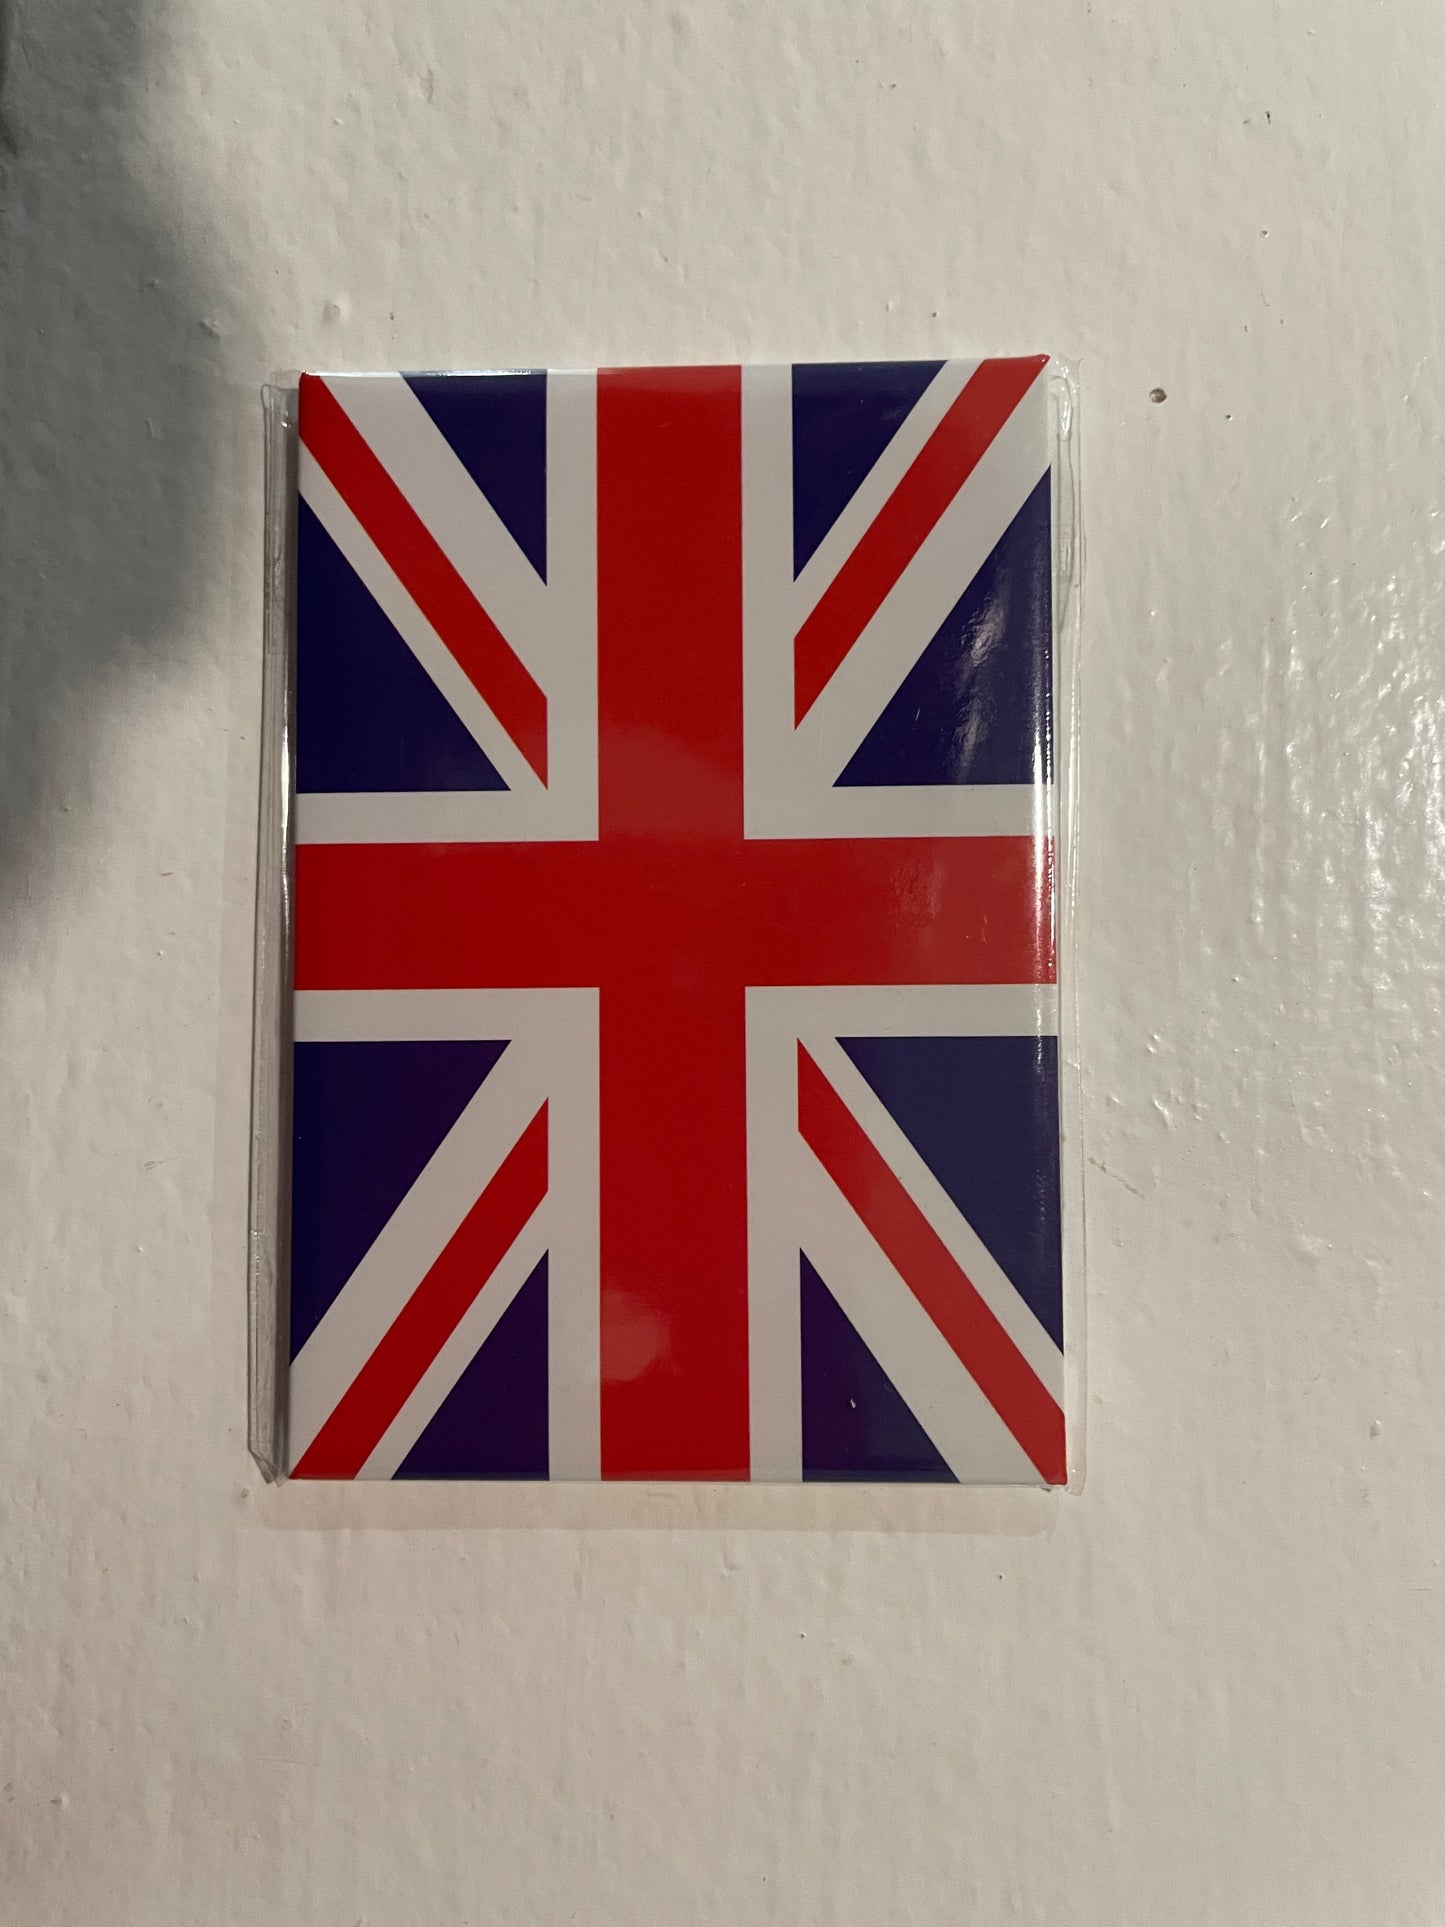 London souvenir magnets